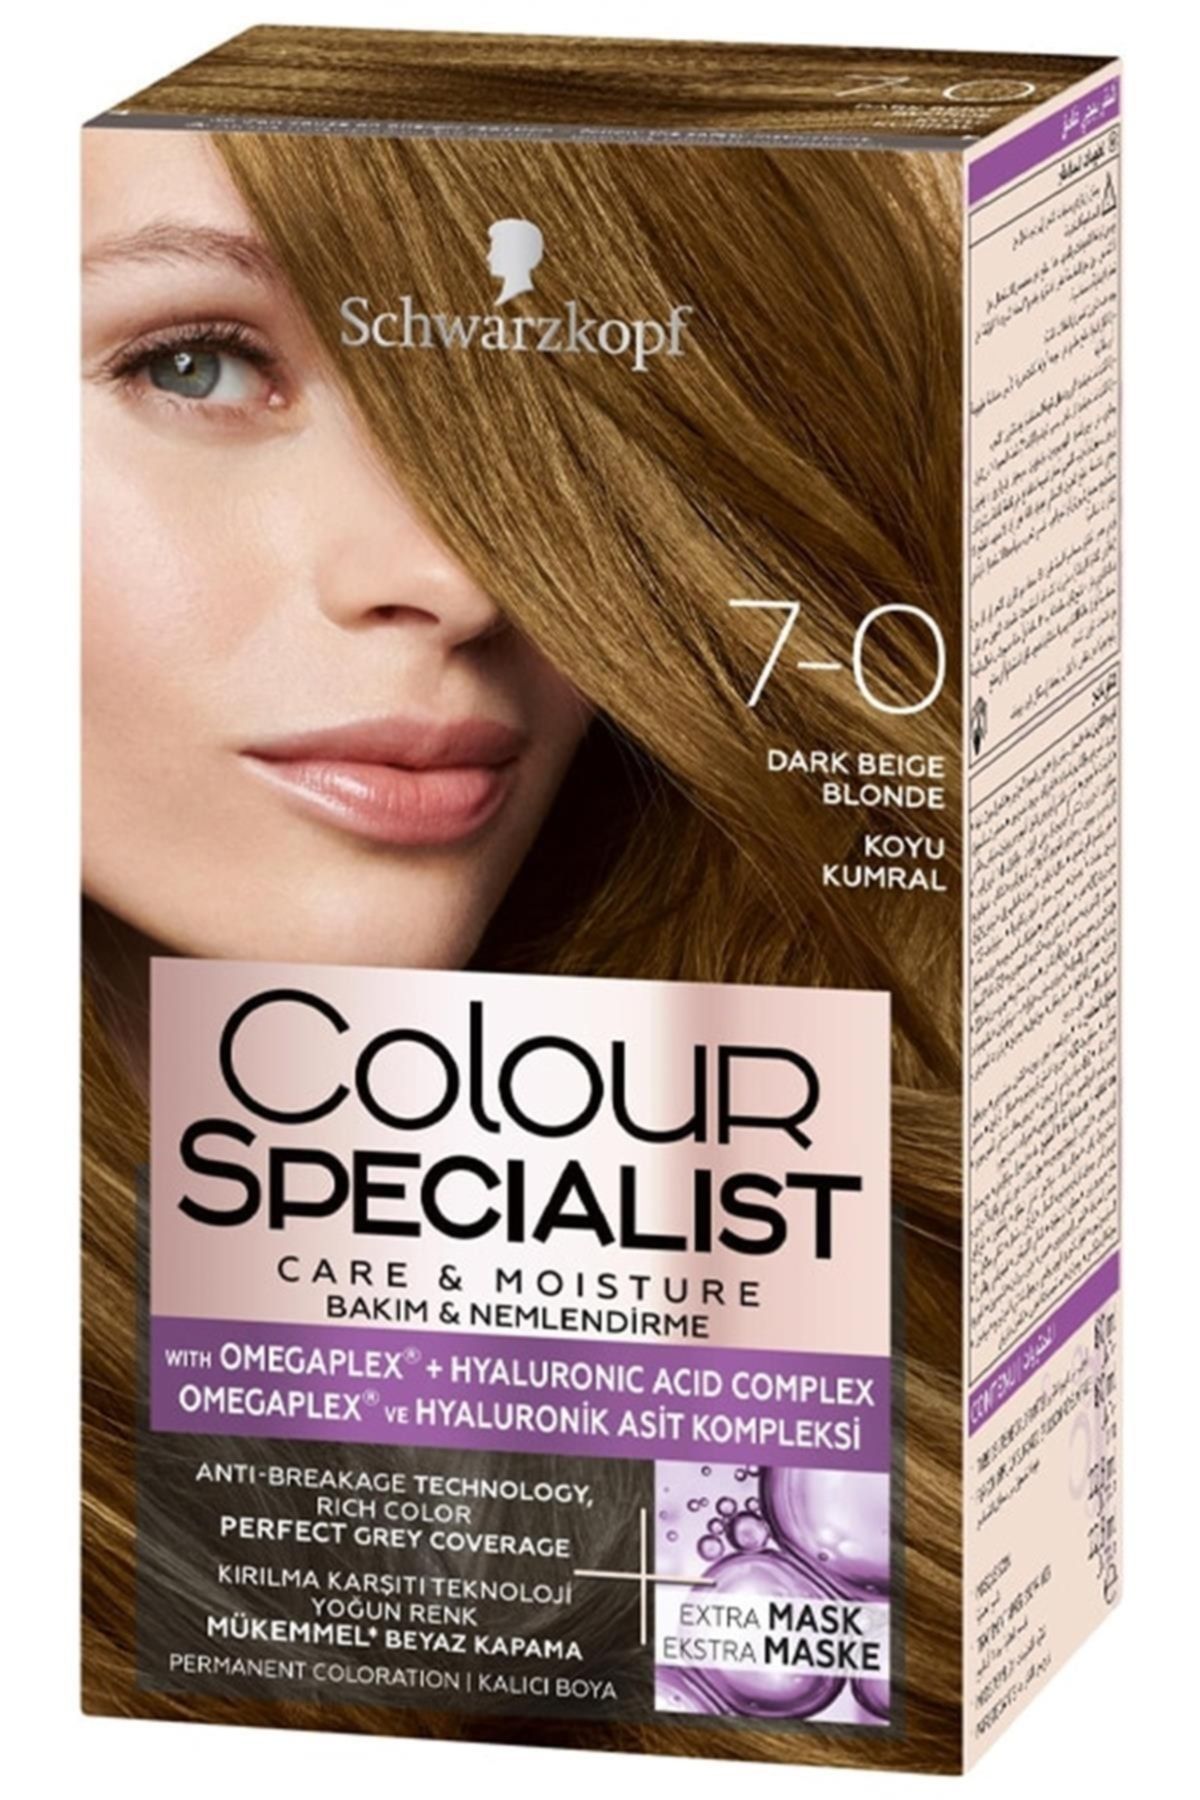 Colour Specialist Marka: Saç Boyası 7.0 Koyu Kumral Kategori: Saç Boyası